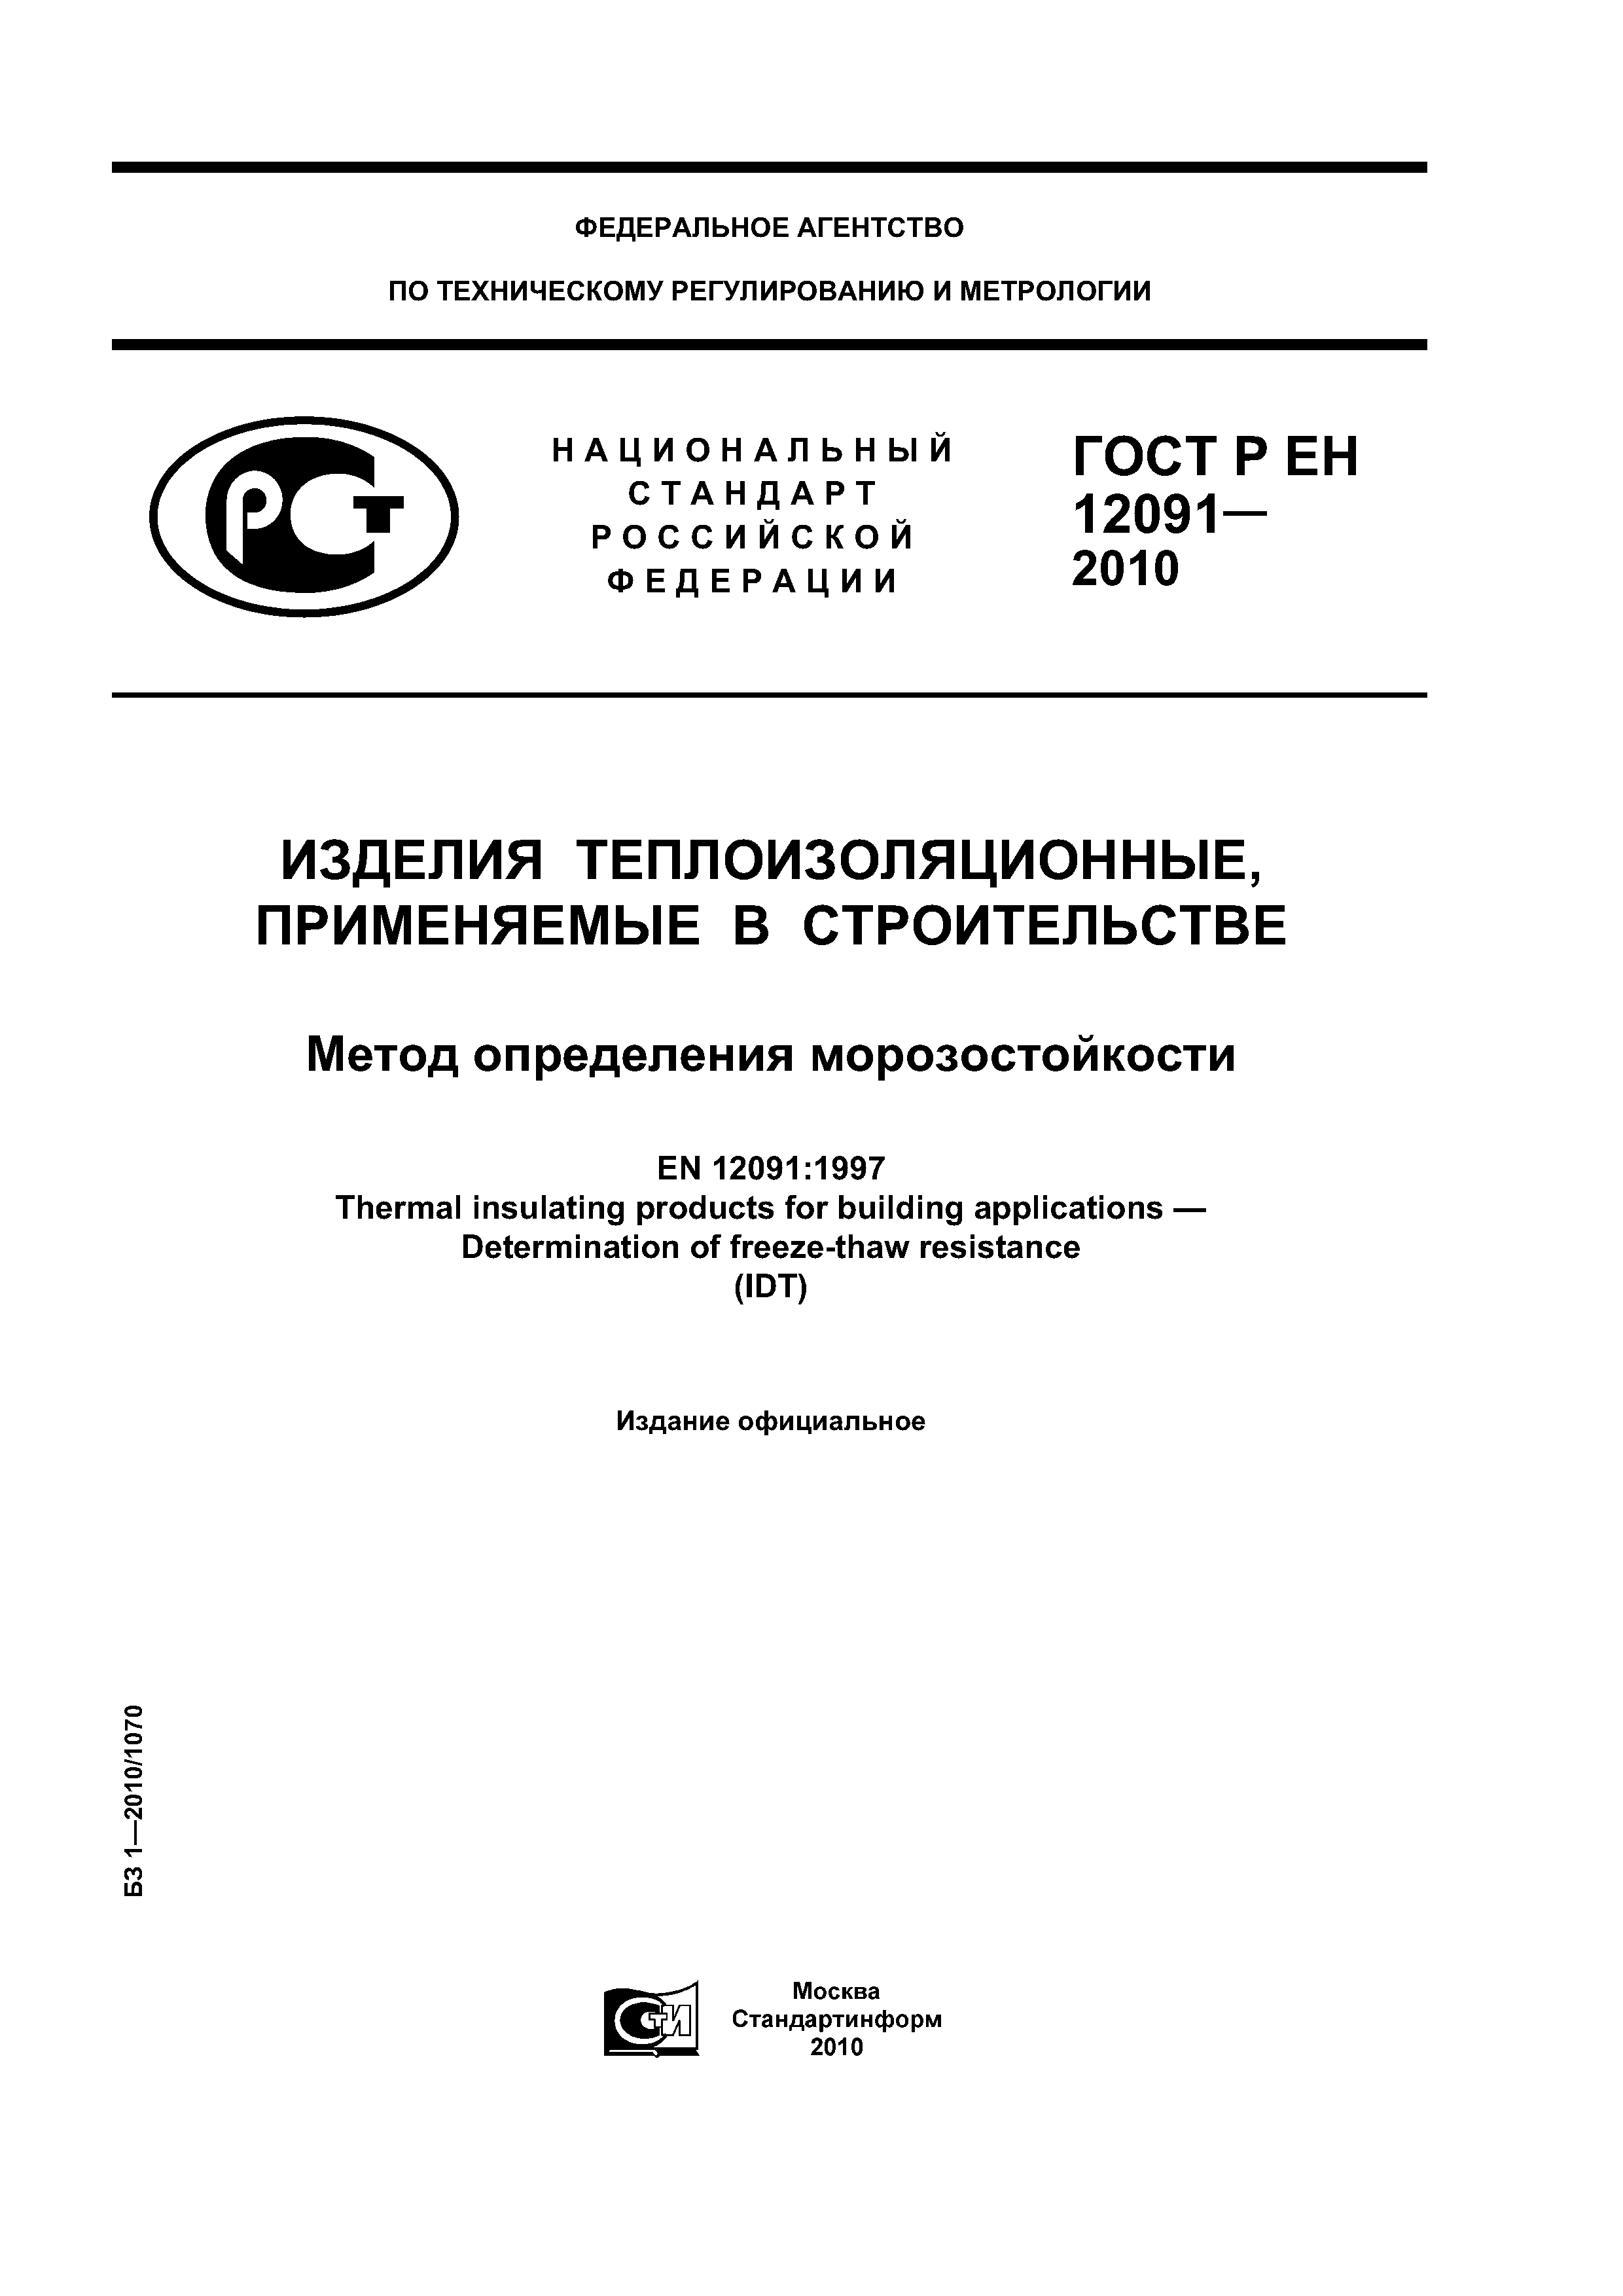 ГОСТ Р ЕН 12091-2010